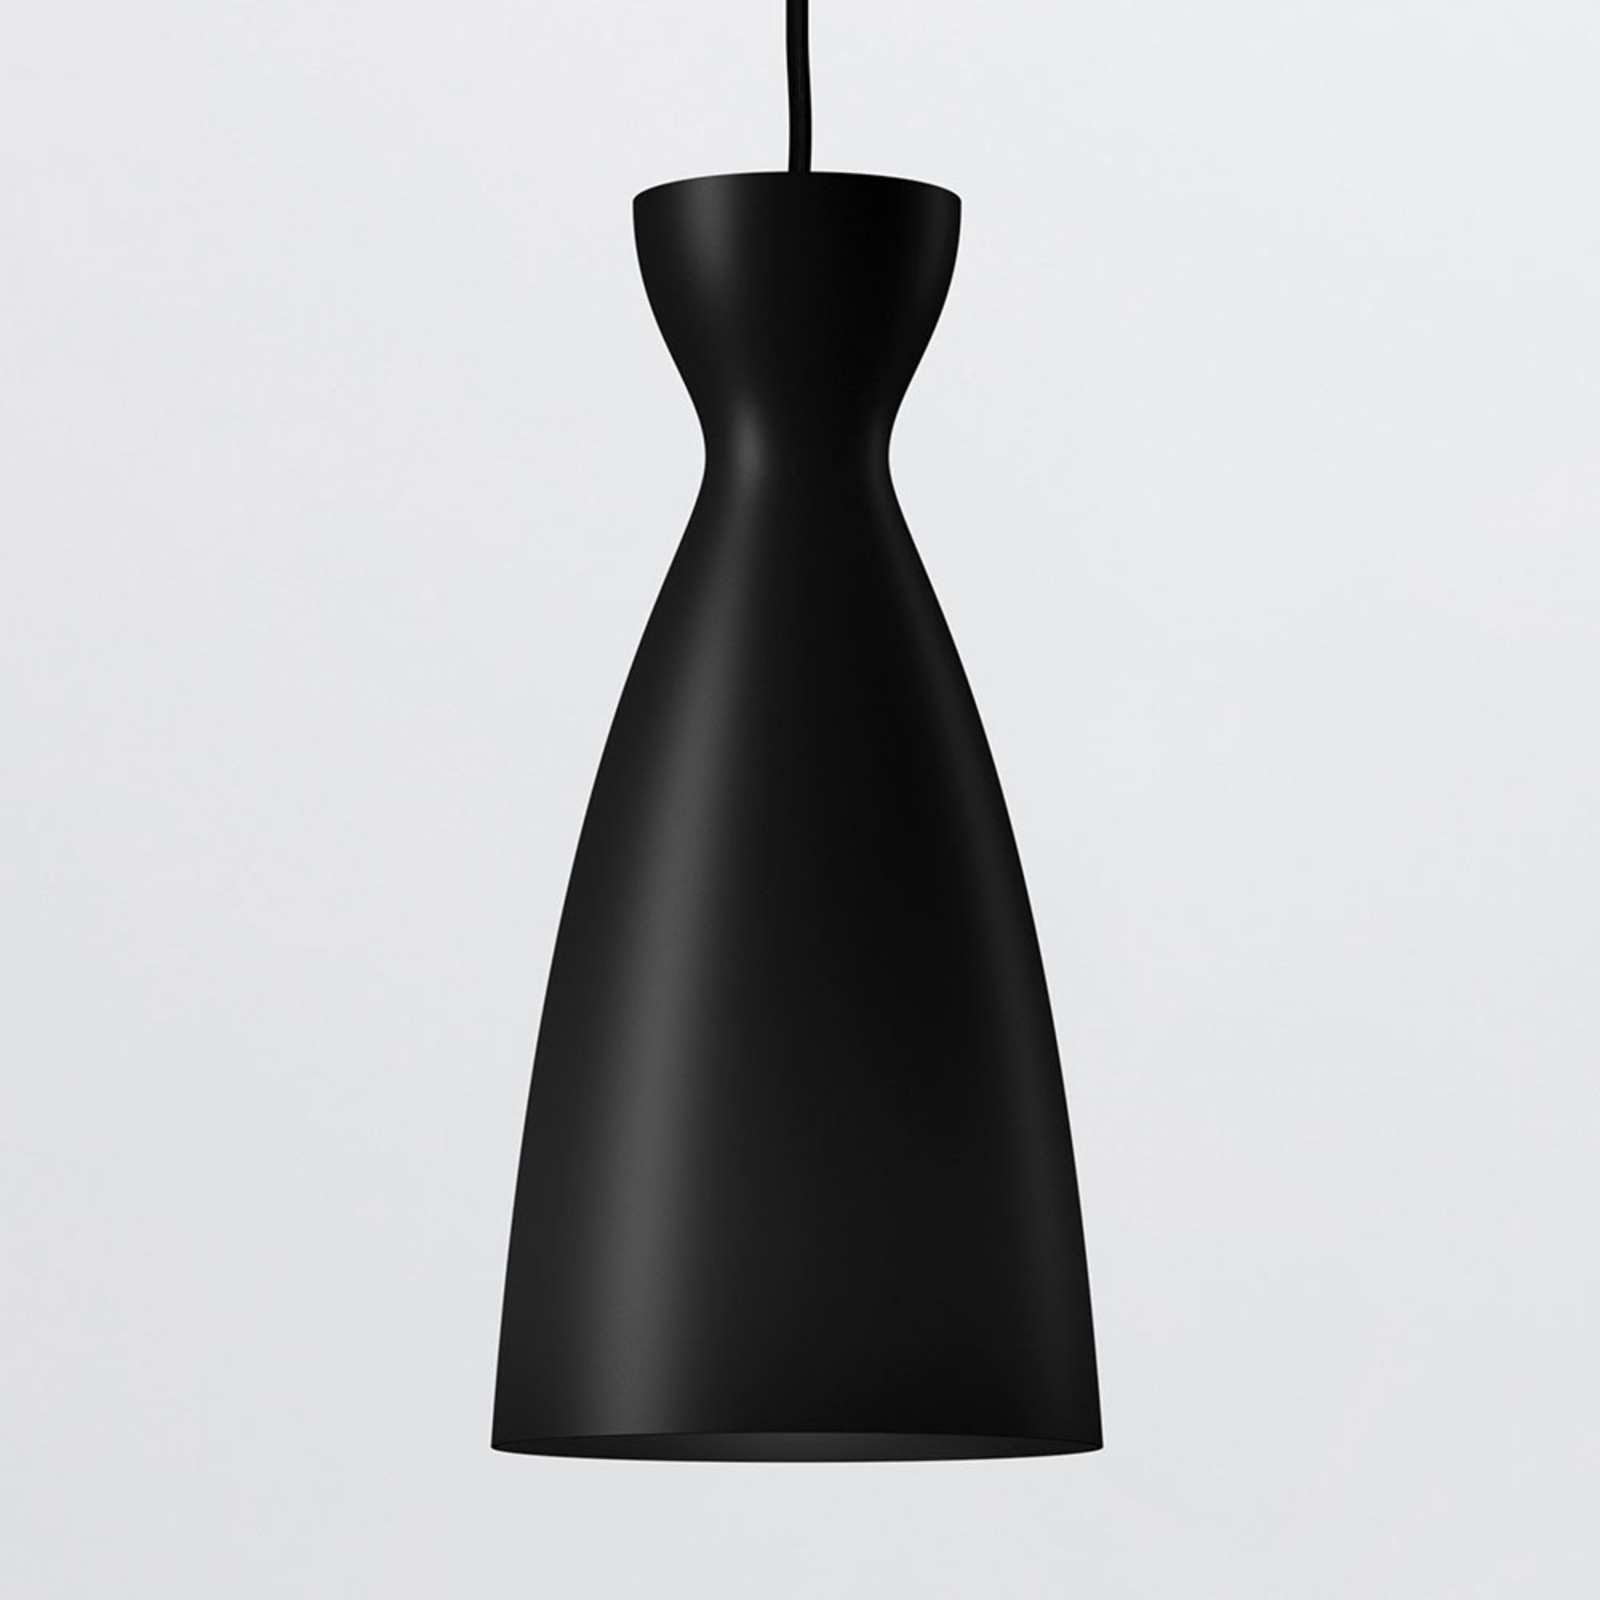 Nyta Pretty long hanglamp 3m, mat zwart